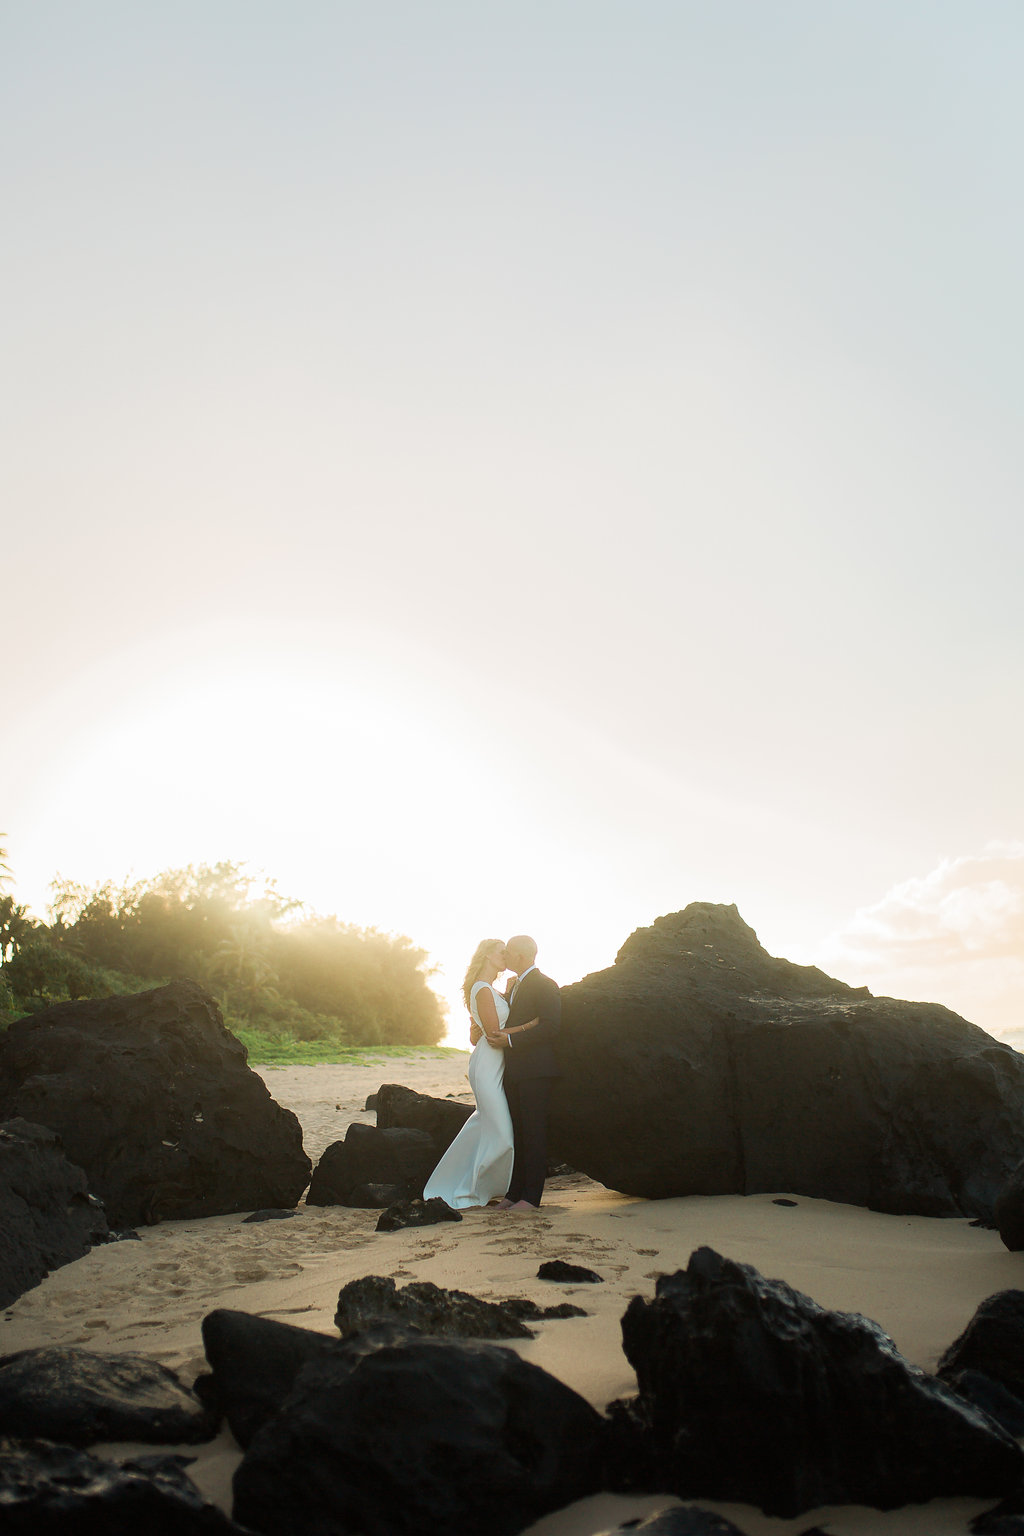 Hawaii Kauai Beach Wedding Photos -- Wedding Blog - The Overwhelmed Bride